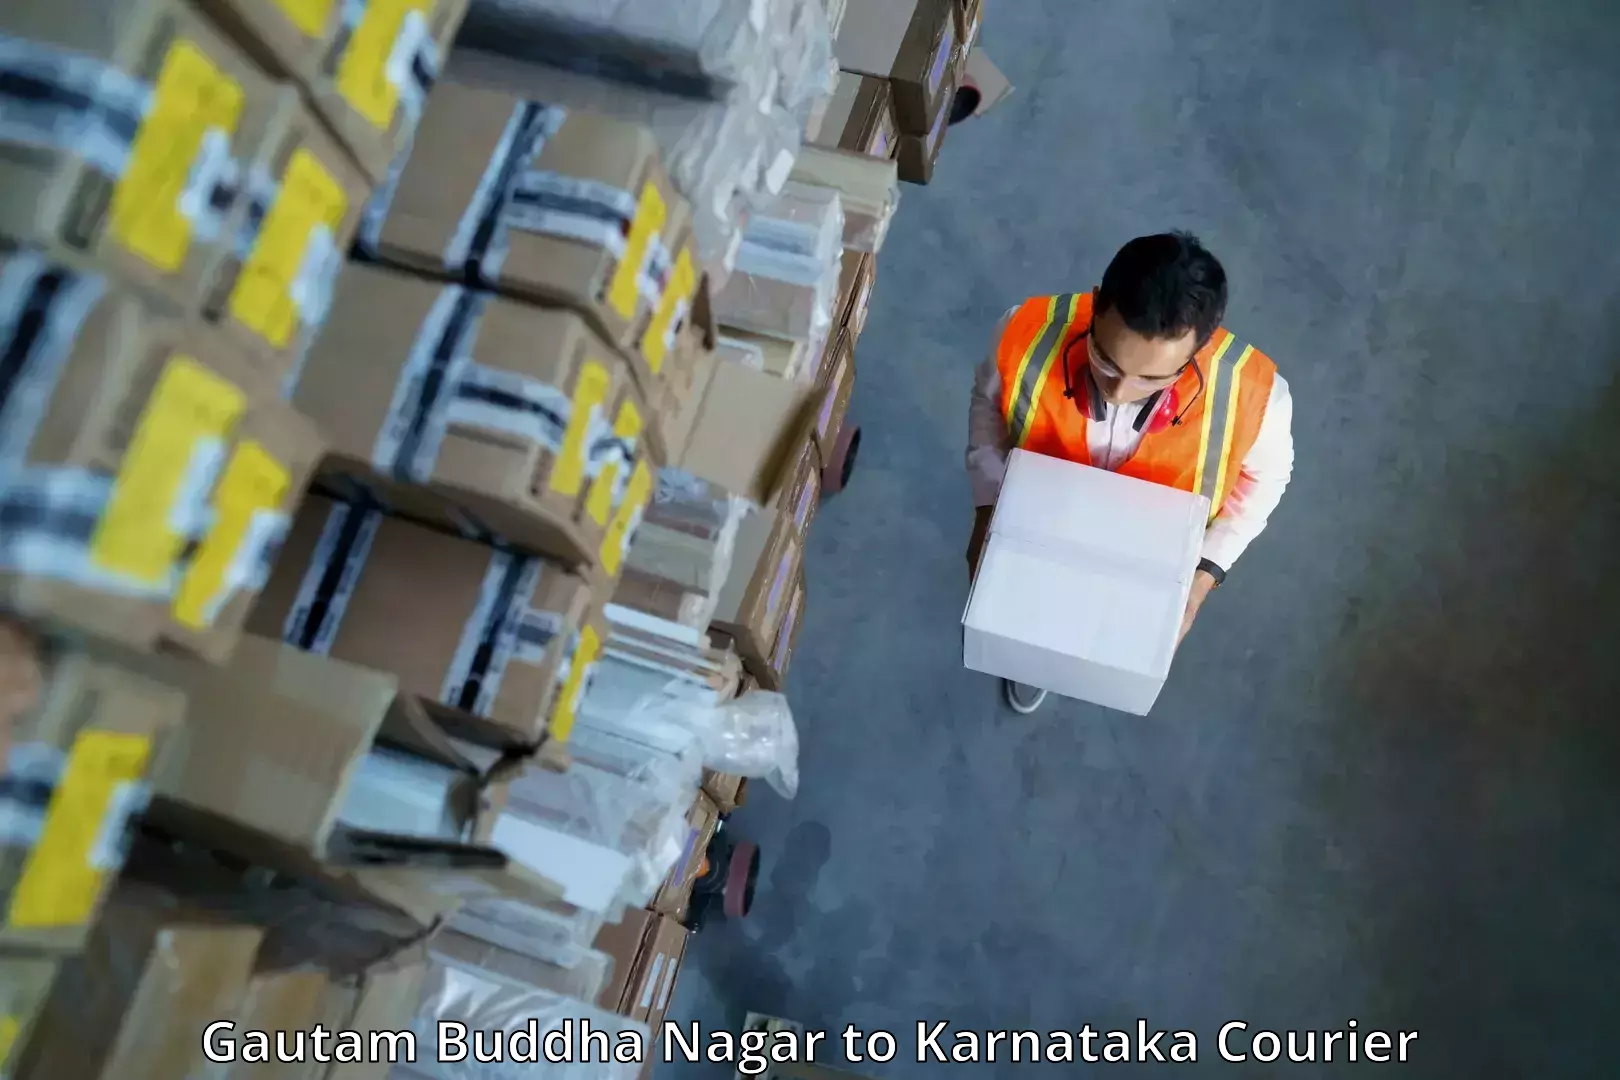 Efficient courier operations Gautam Buddha Nagar to Jagalur